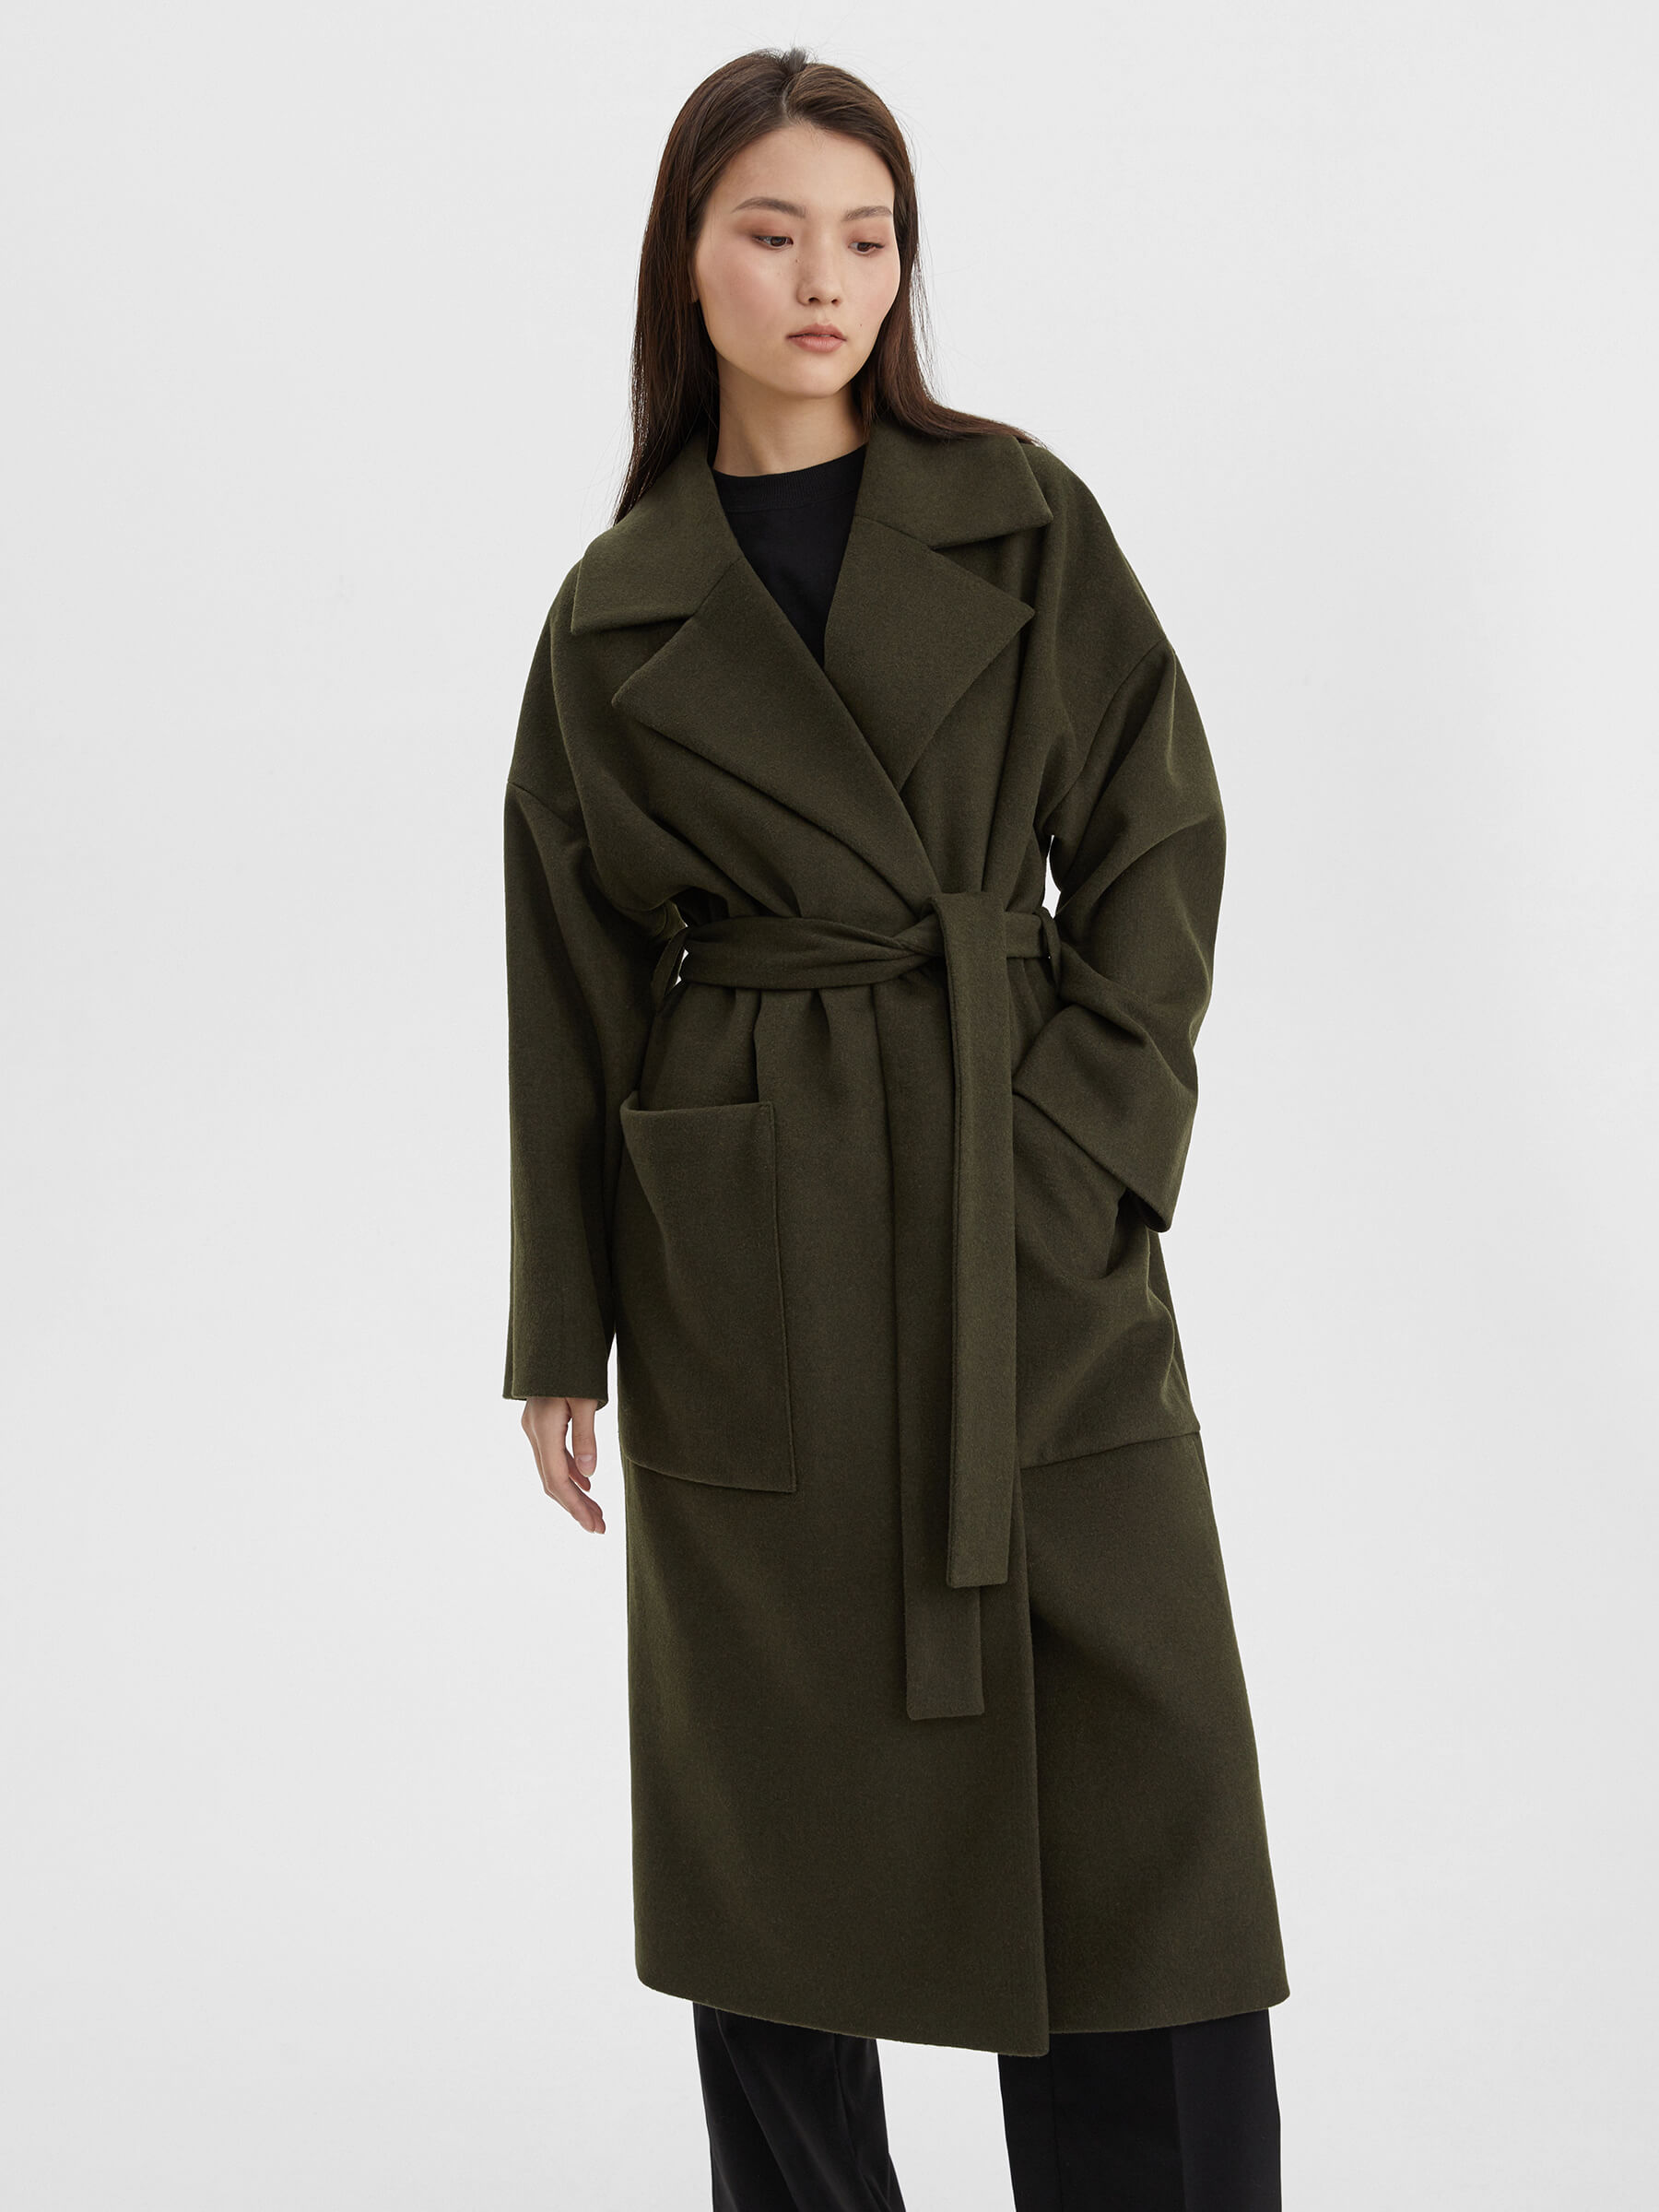 Пальто женское длинное с объемными карманами и поясом, цвет – хаки